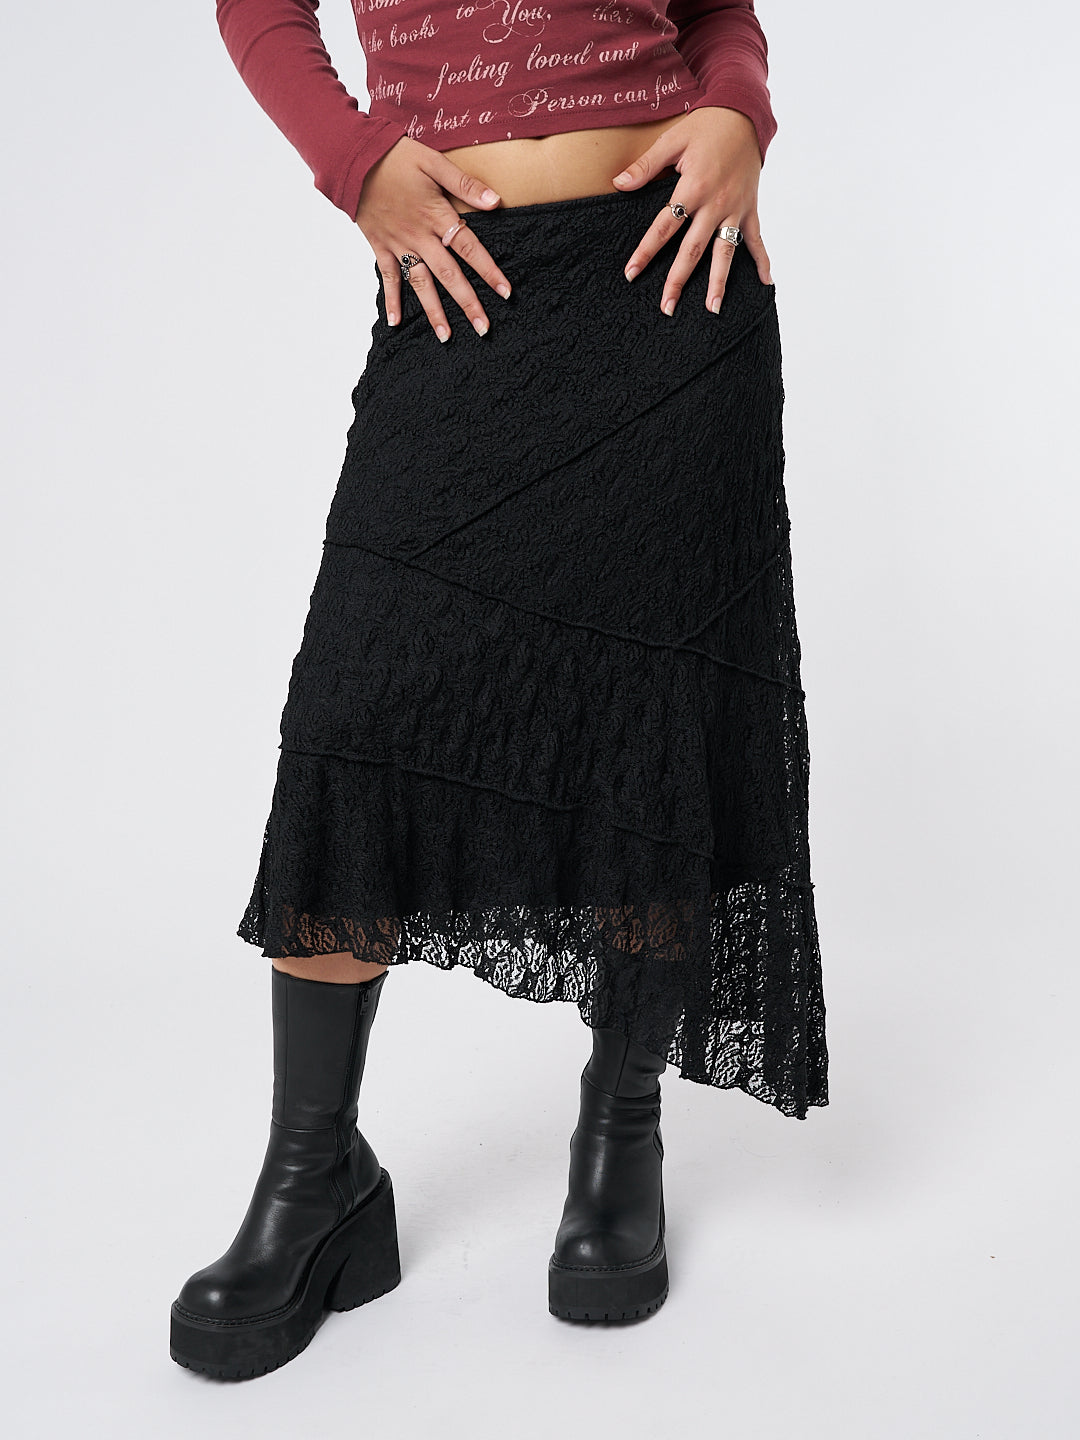 Nolia Black Lace Asymmetric Midi Skirt - Minga London